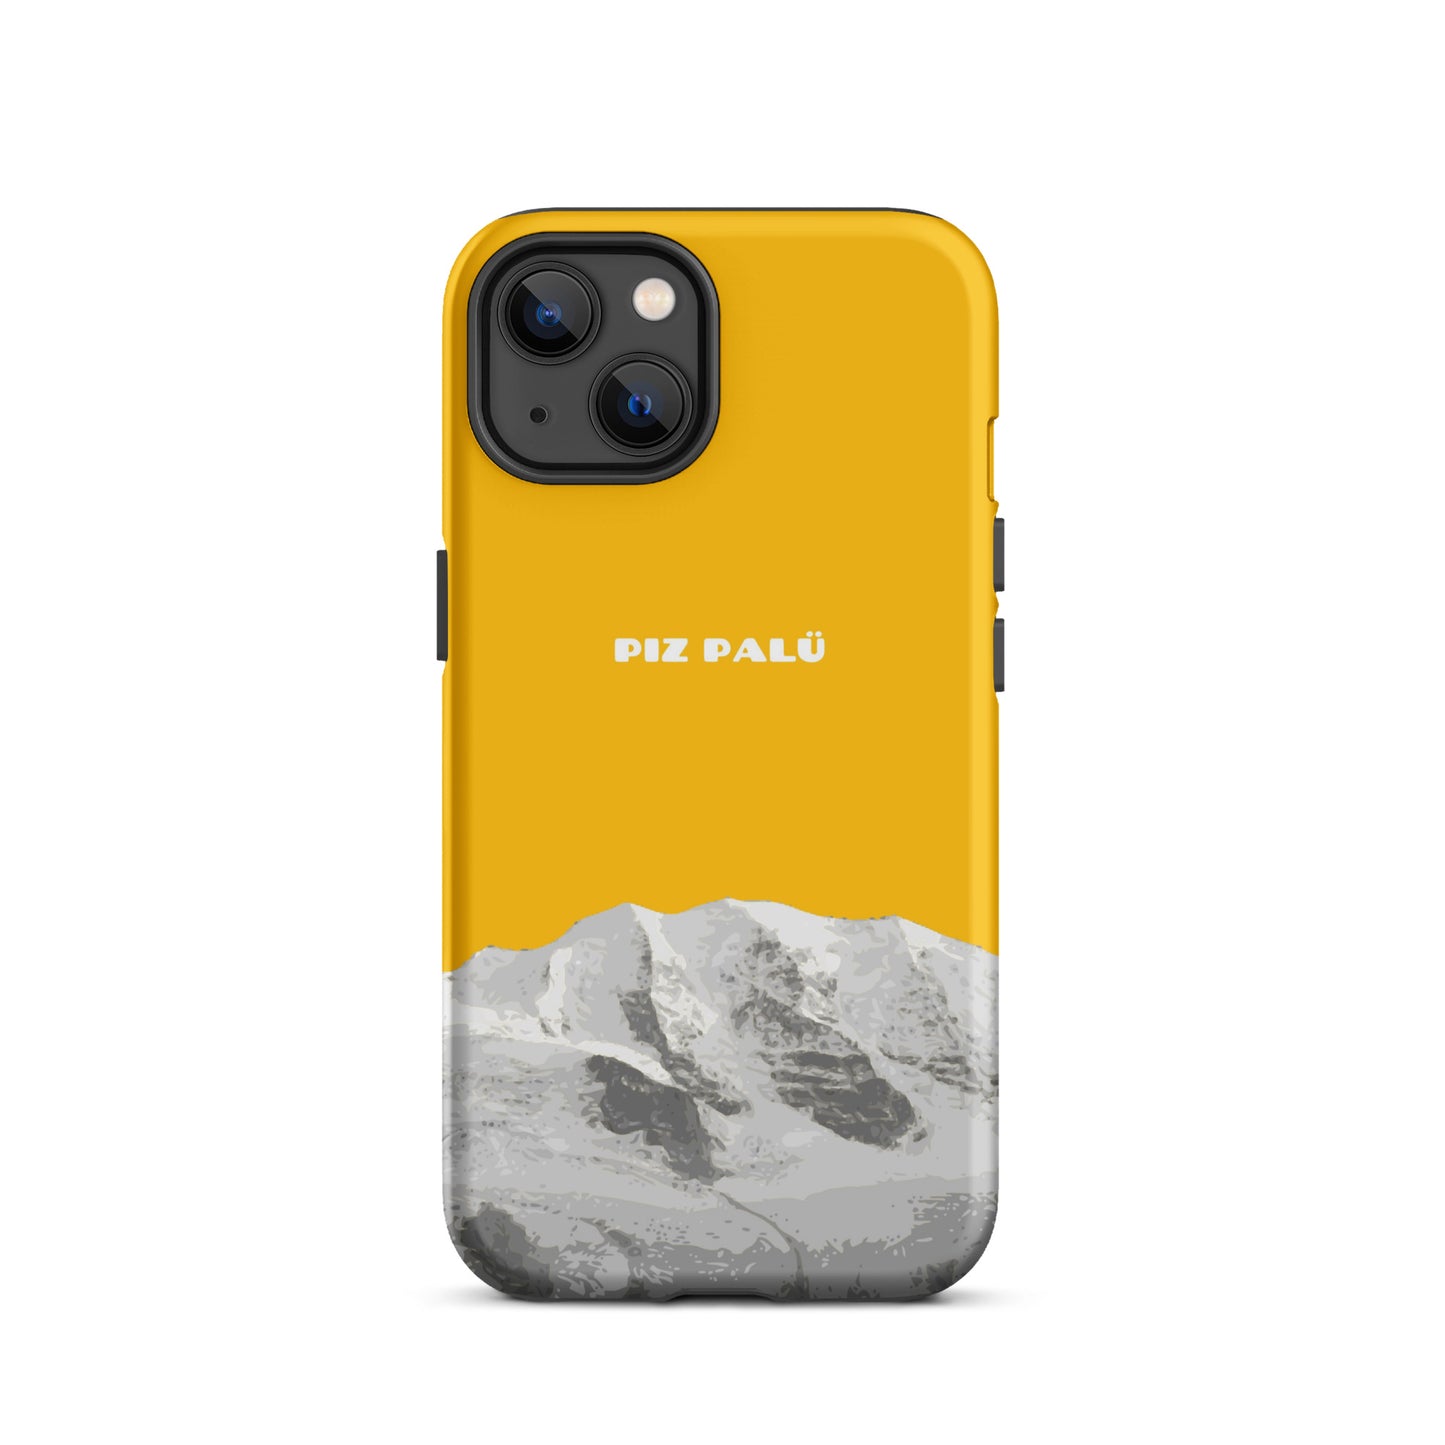 Hülle für das iPhone 13 von Apple in der Farbe Goldgelb, dass den Piz Palü in Graubünden zeigt.